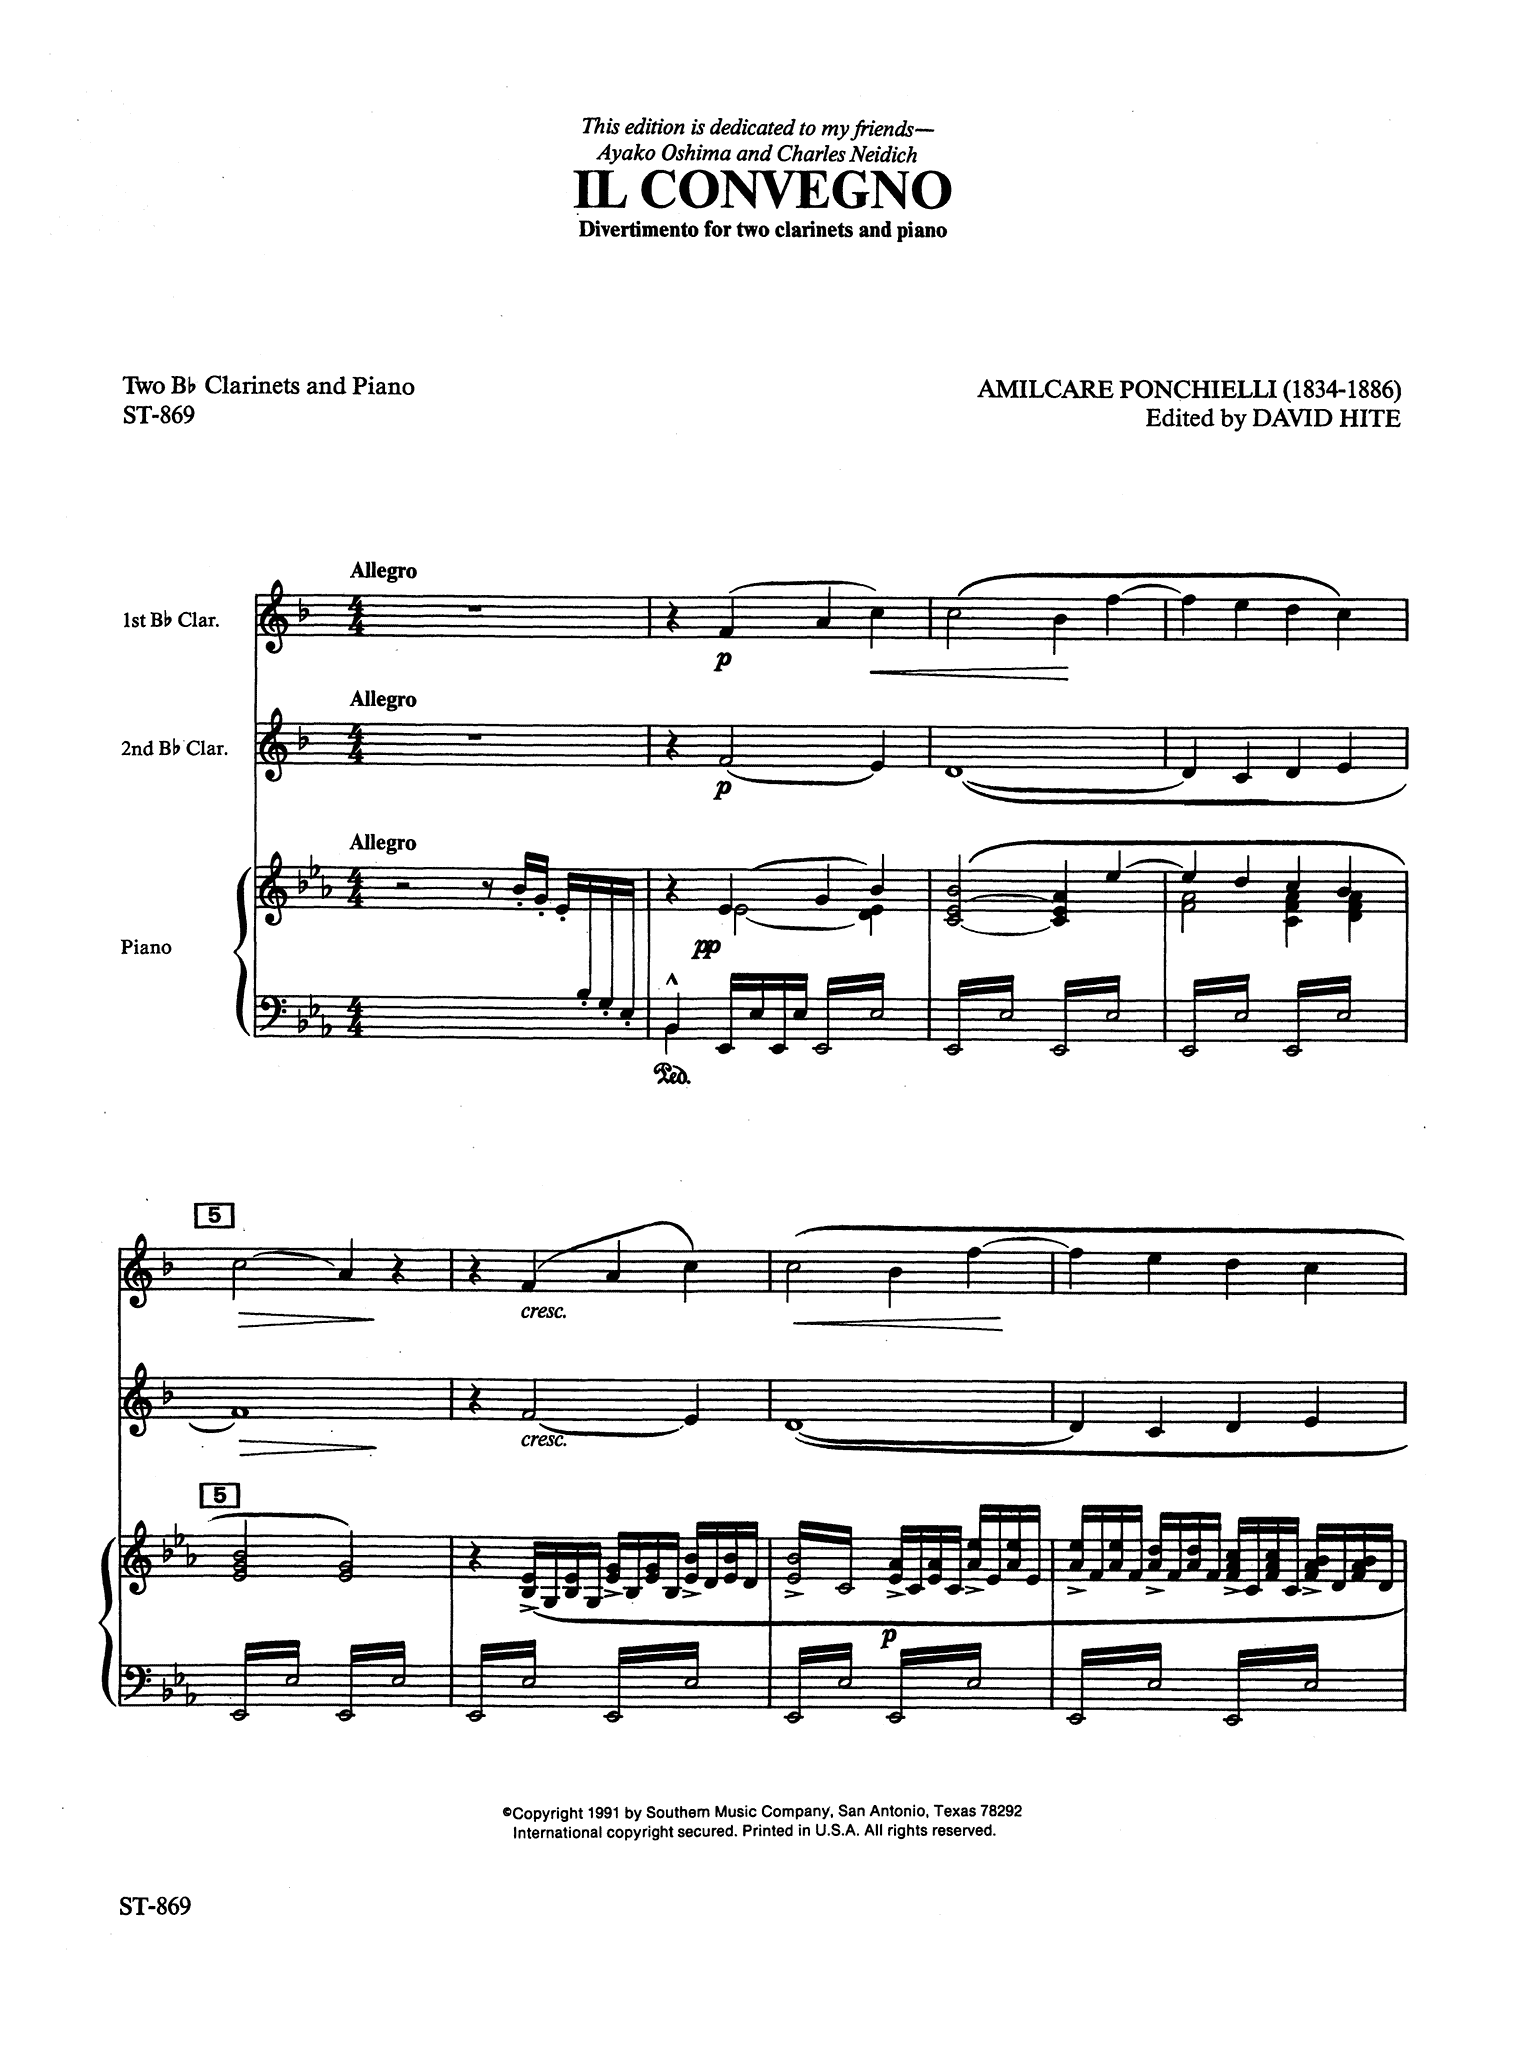 Ponchielli Il Convegno, Op. 76 piano score page 1